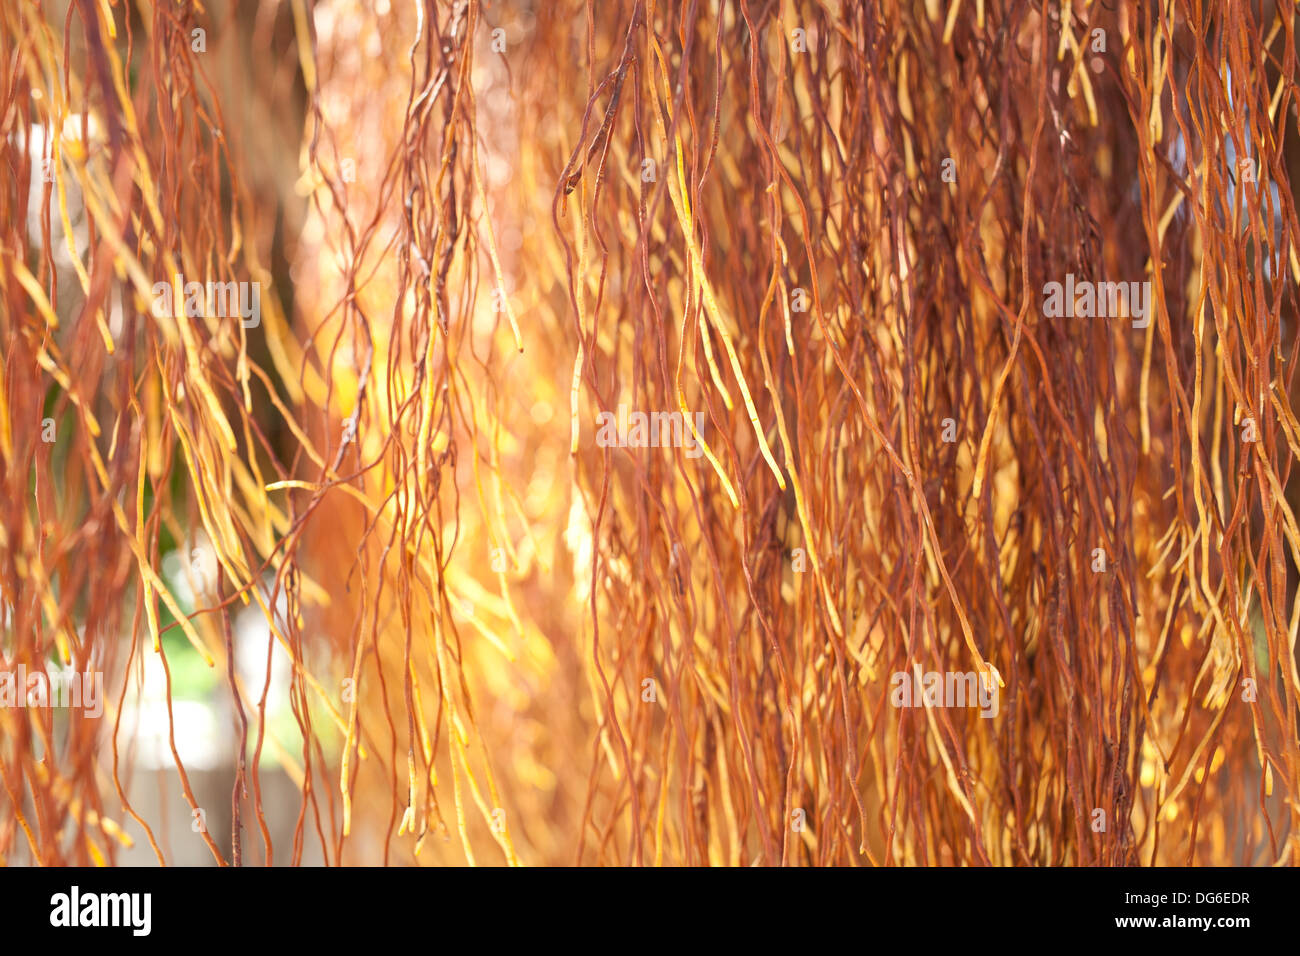 Radici di aria, marrone giallo aria radice del banyan tree texture Foto Stock